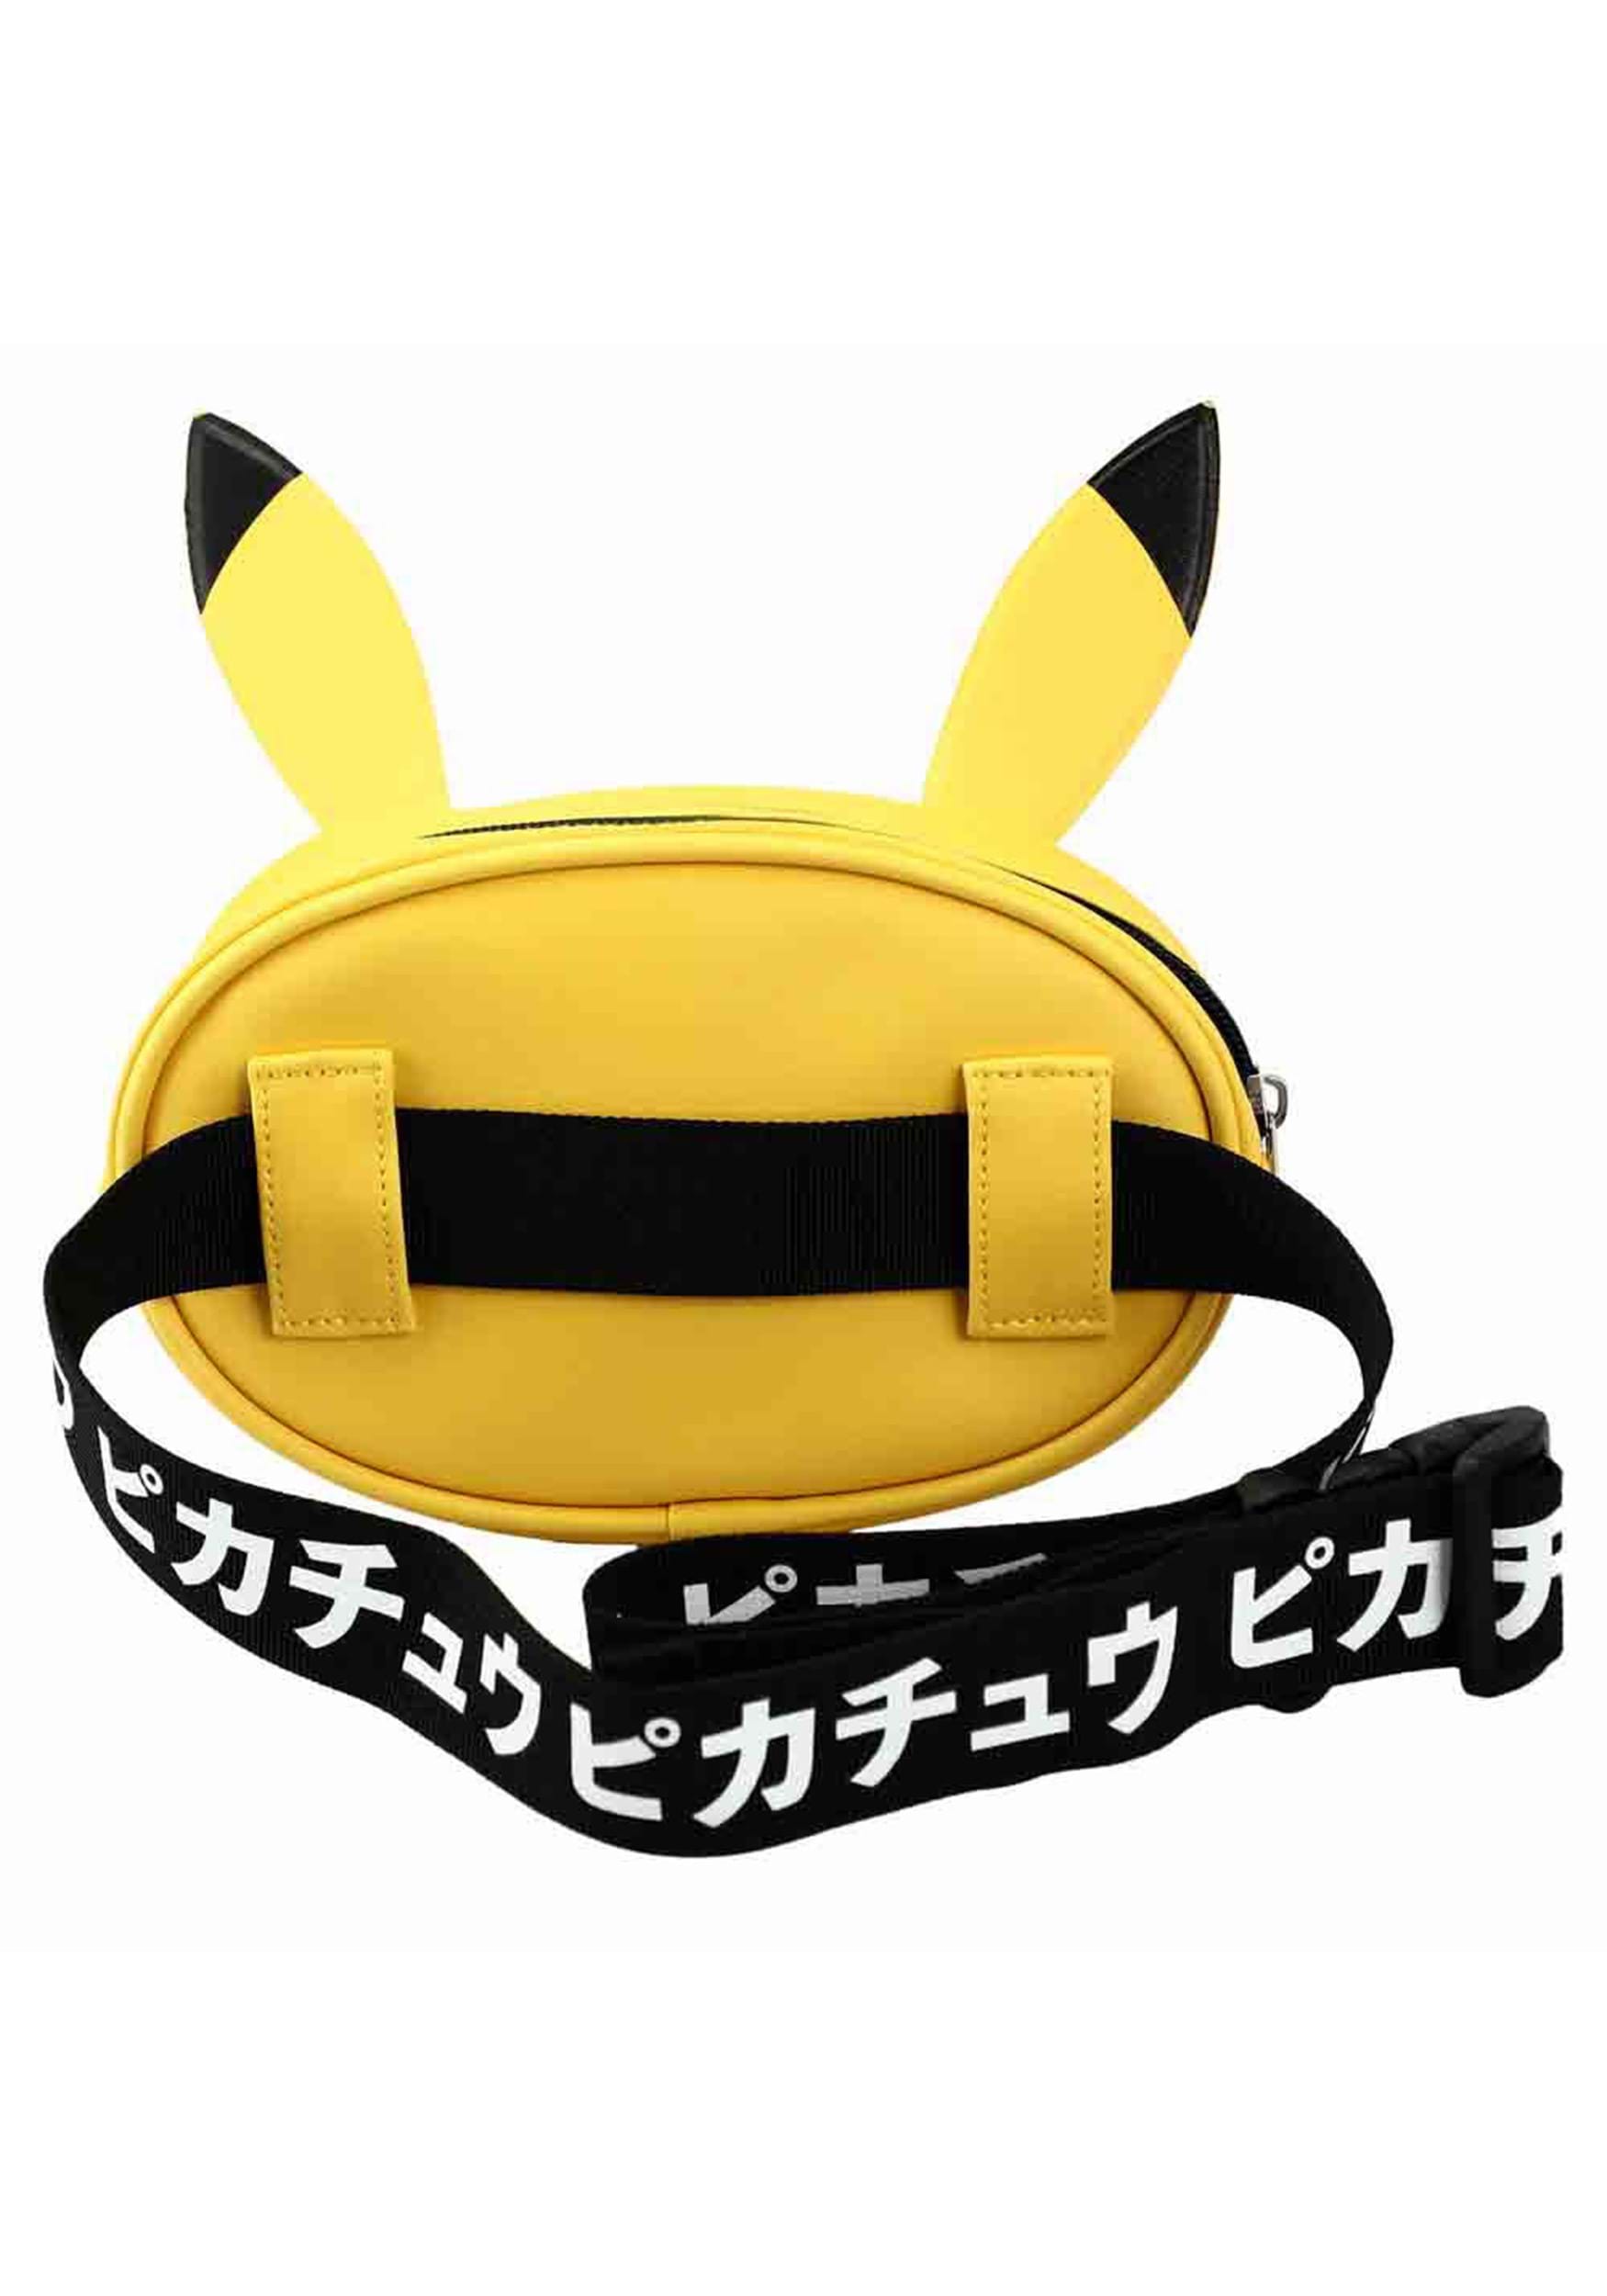 Pikachu Pokemon Fanny Pack